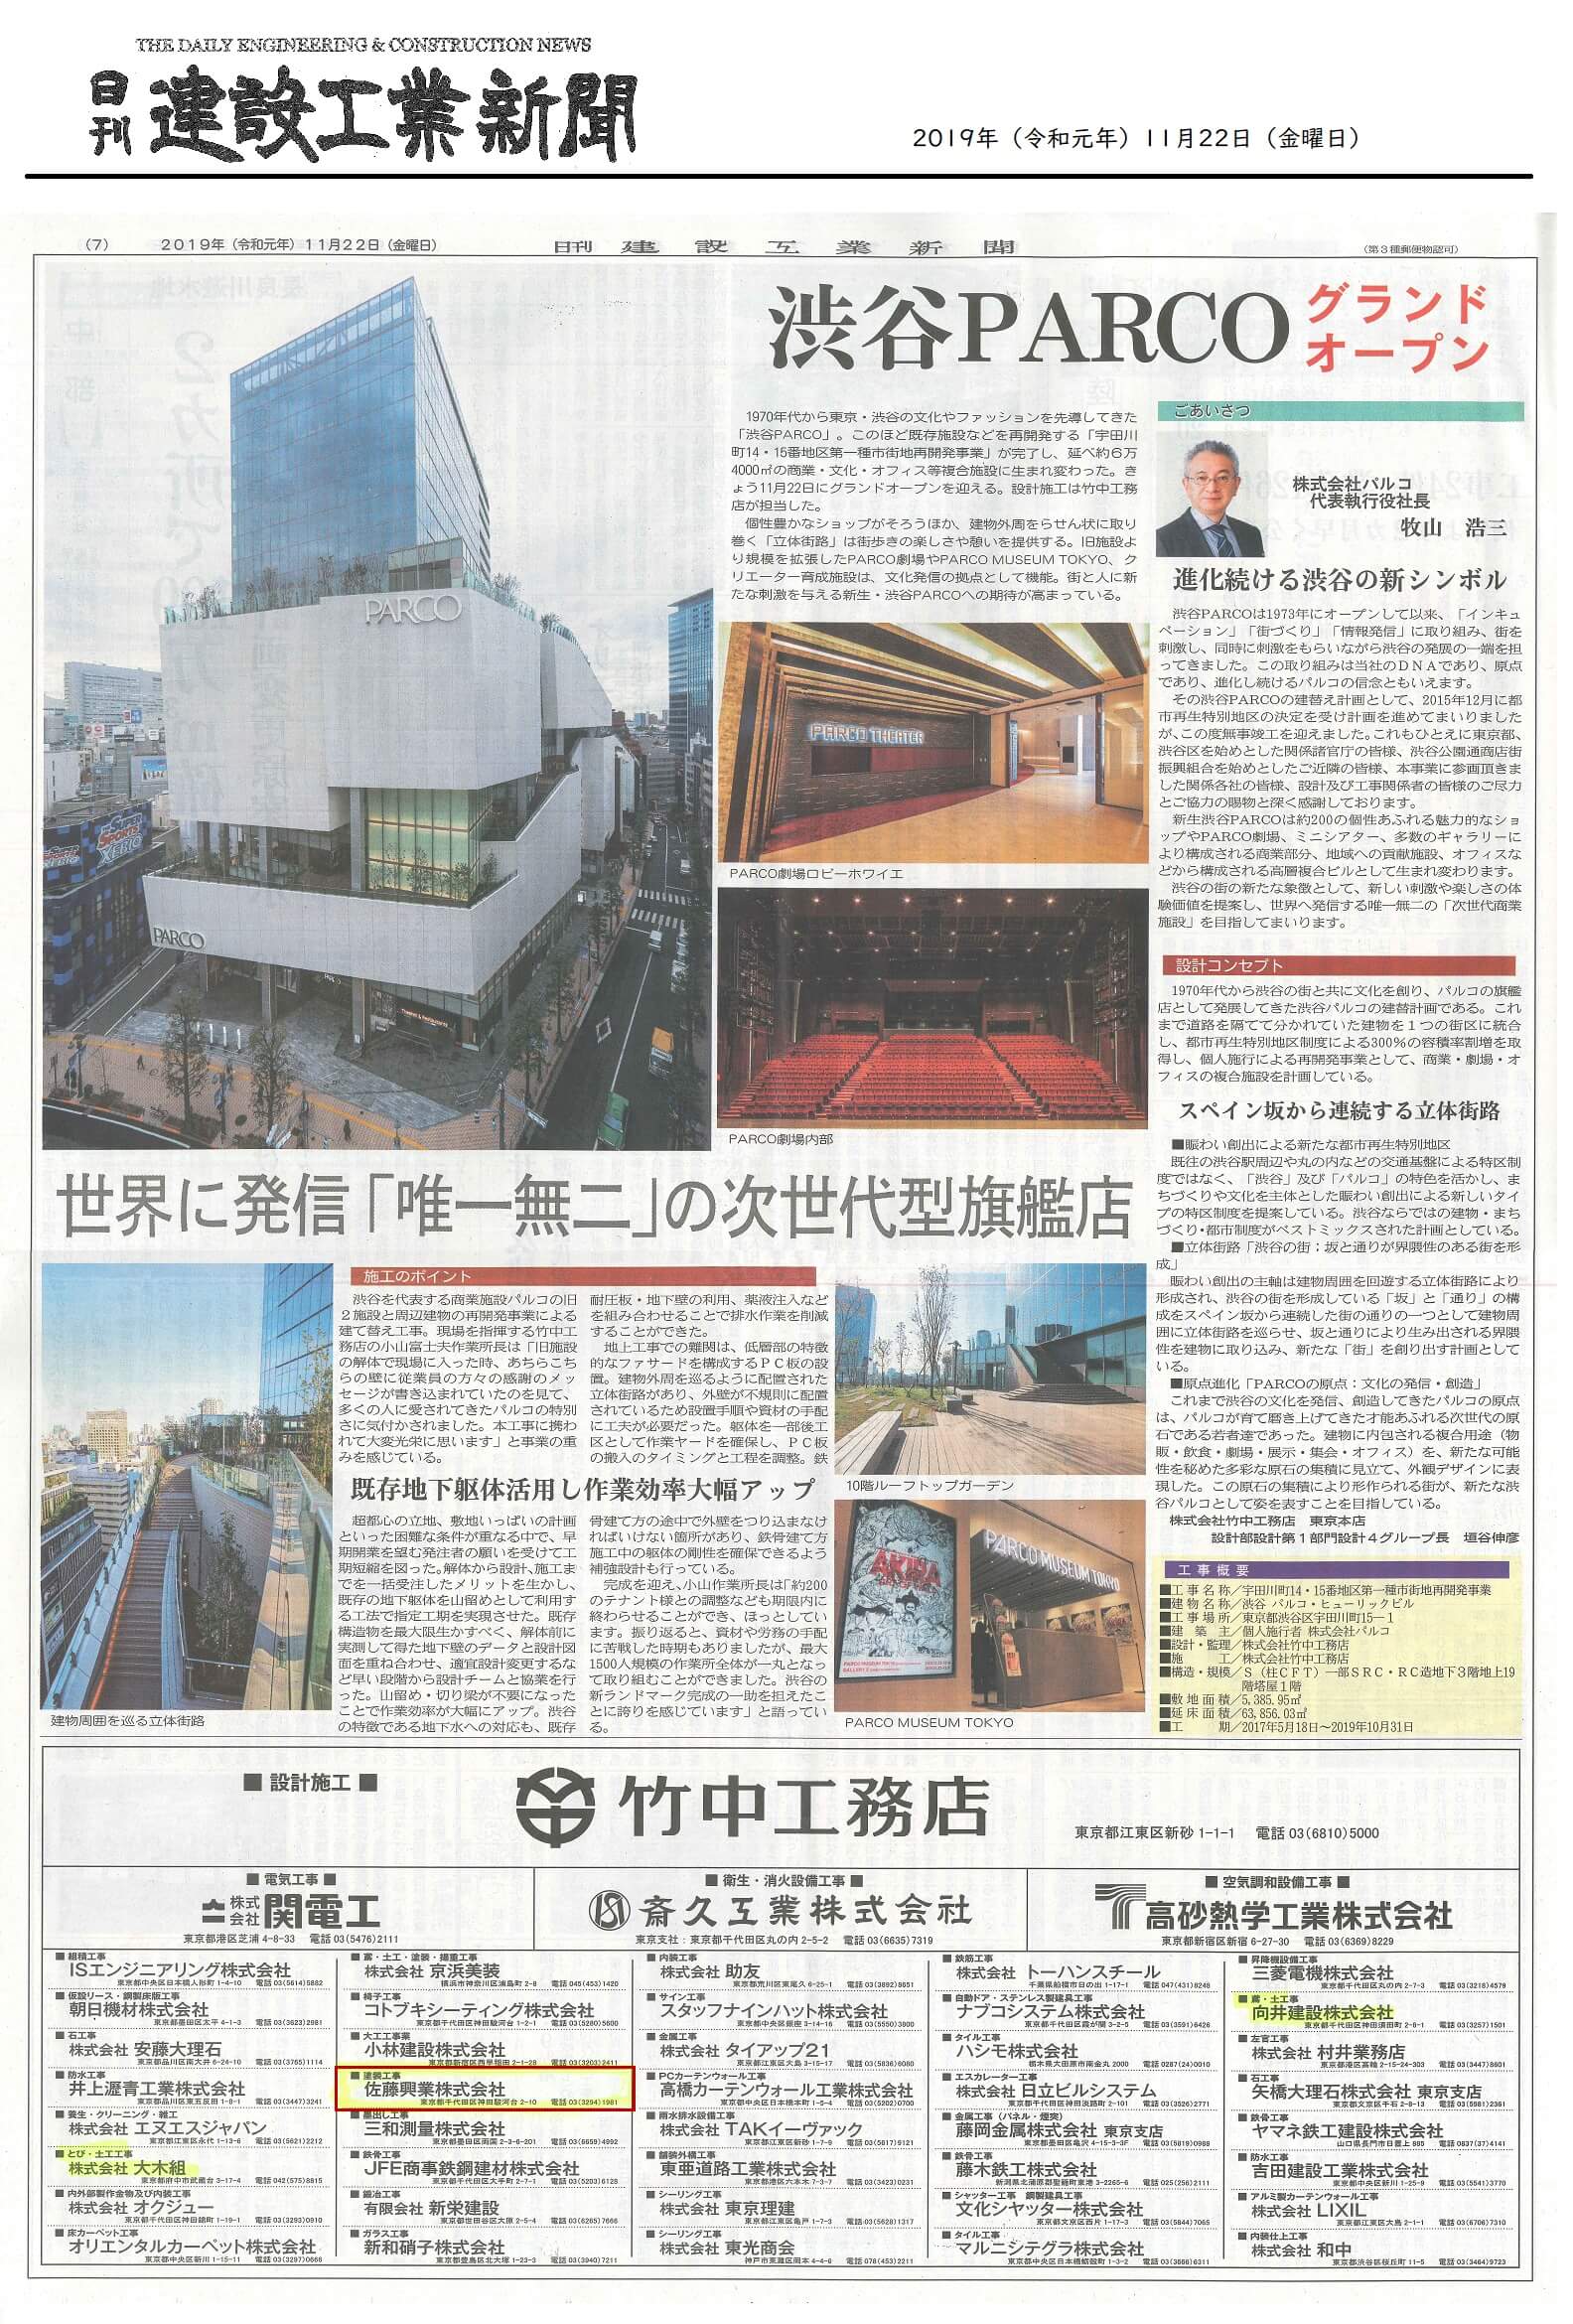 渋谷PARCOの竣工広告が『日刊建設工業新聞』に掲載